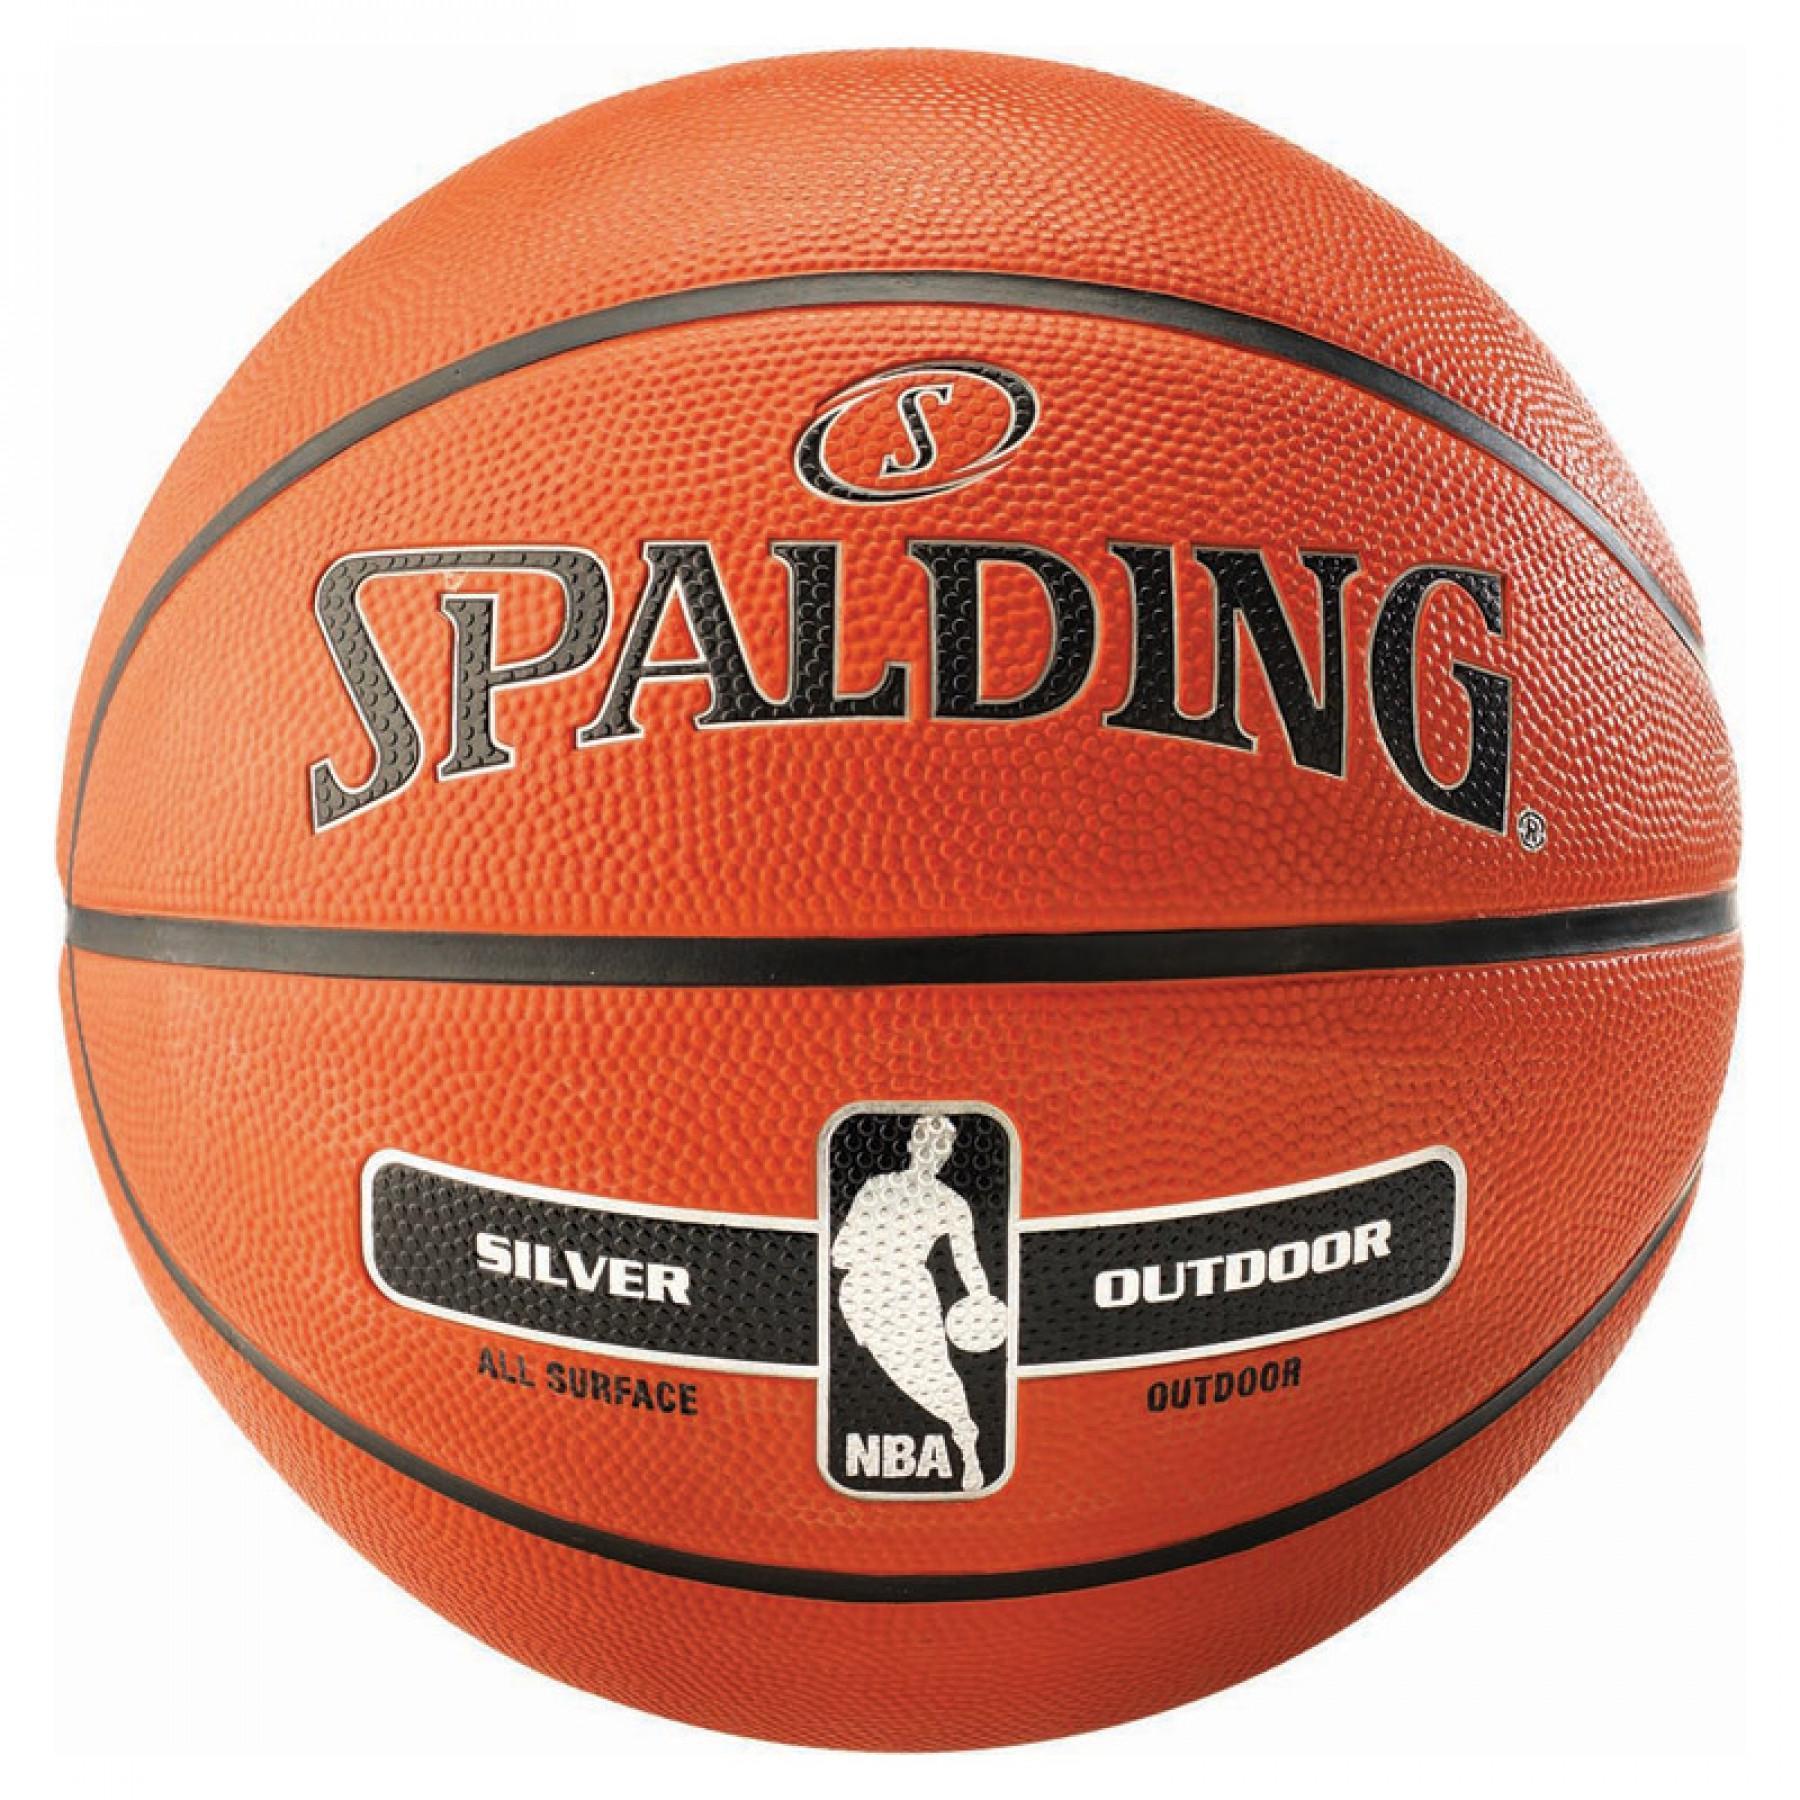 Balon Spalding NBA Silver (65-887z)